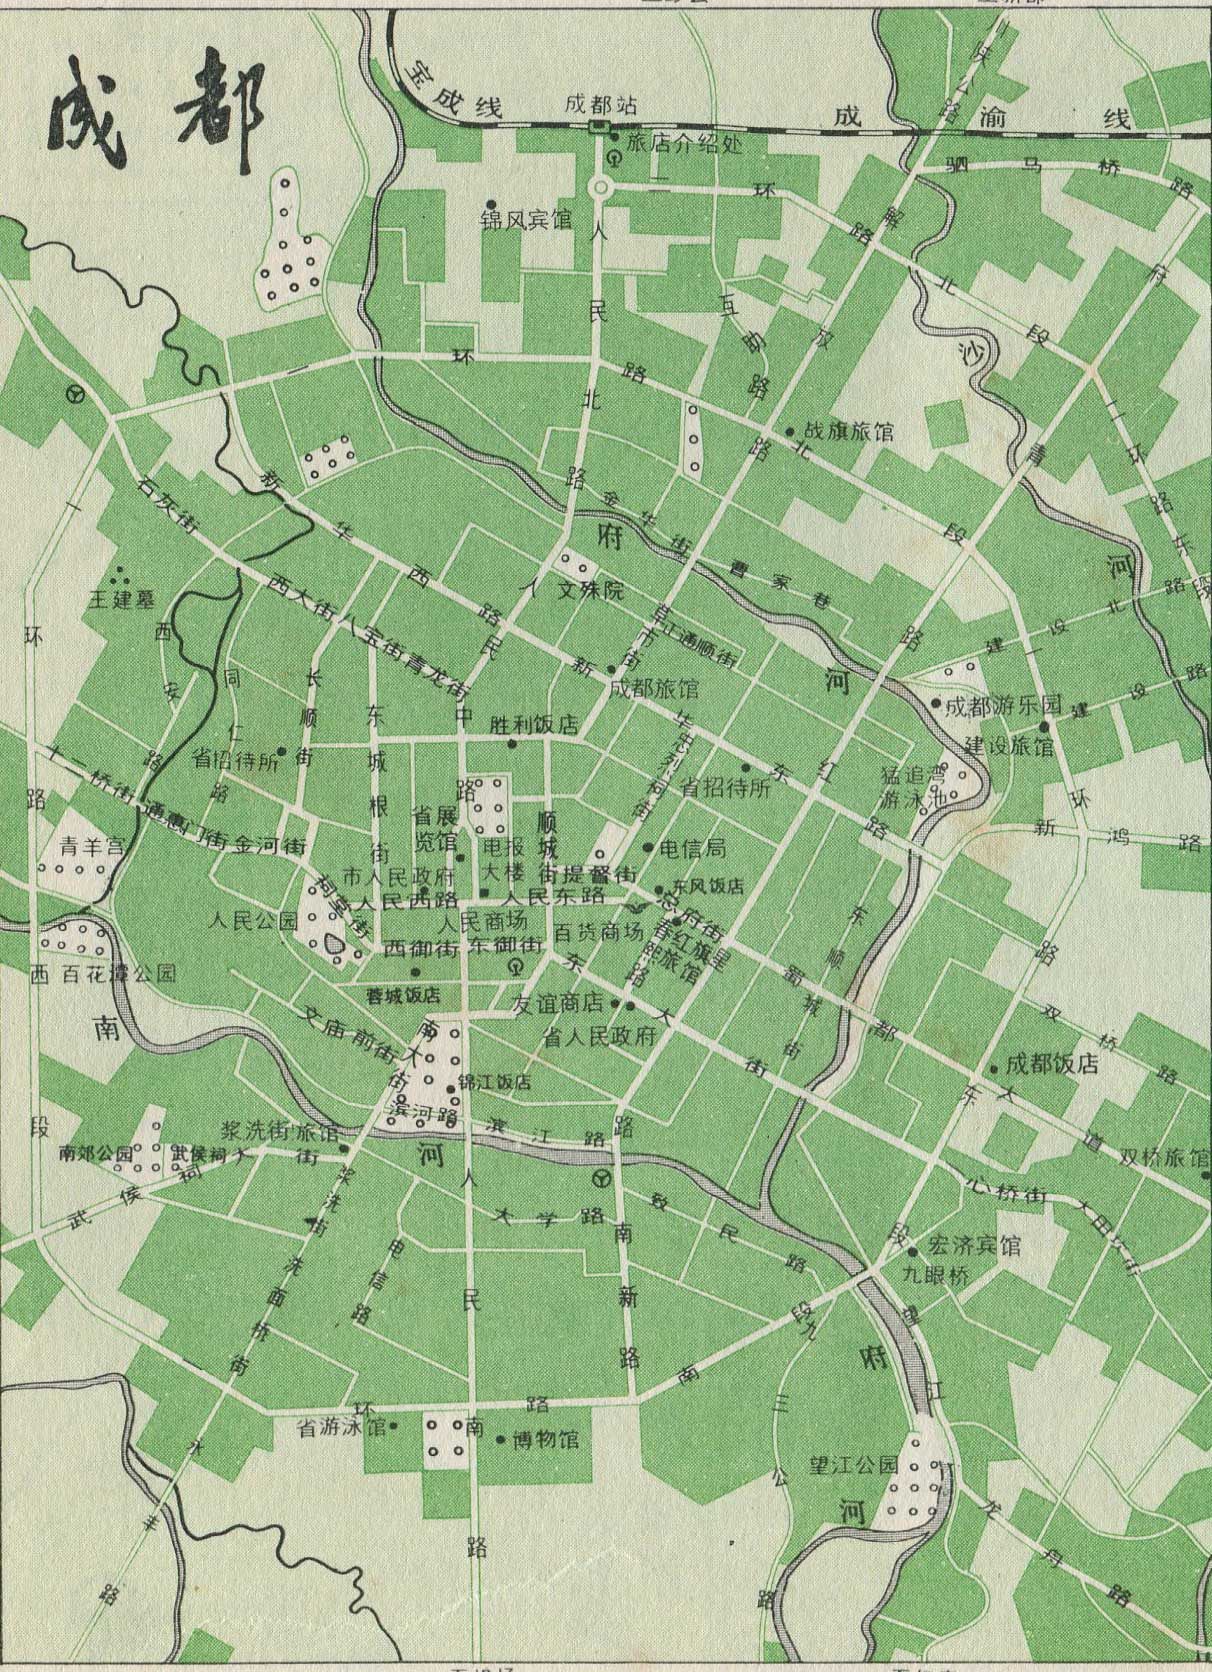 交通地图 铁路线路图 >> 成都市铁路线路图  上一张地图: 南宁市铁路图片